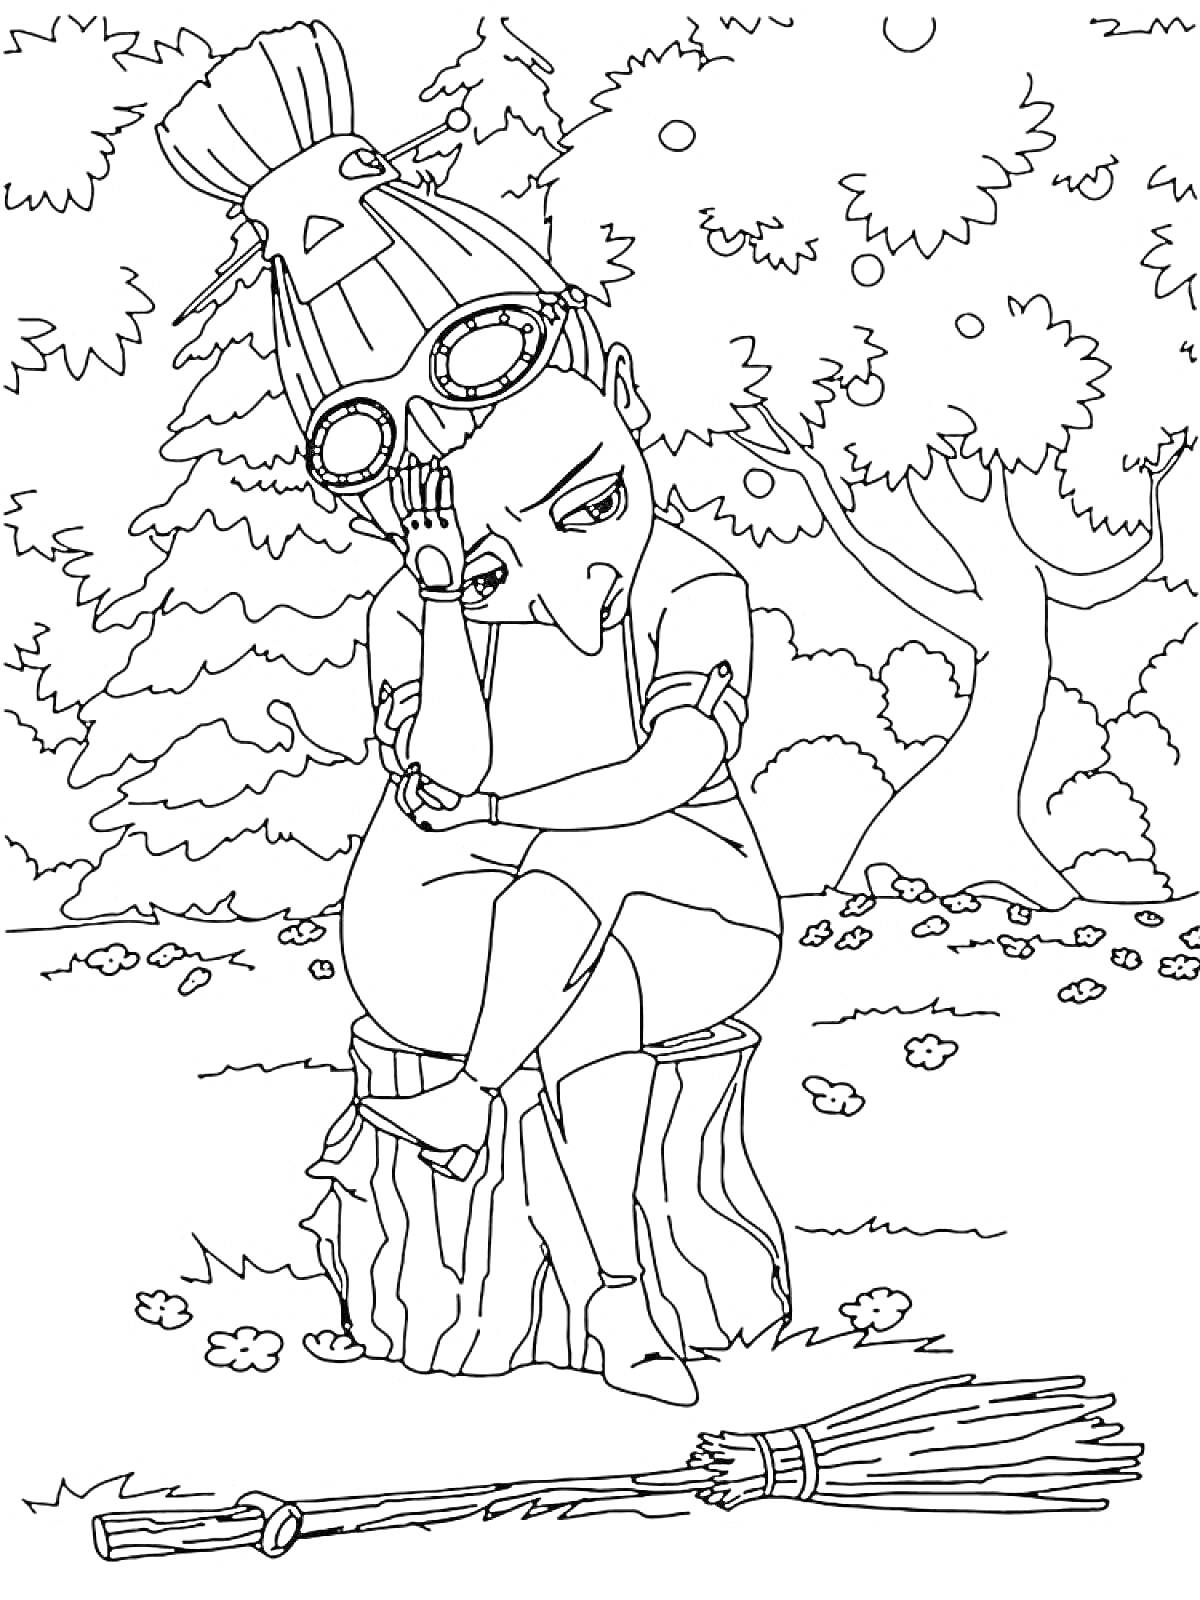 Раскраска Царевна, сидящая на пне в лесу, со шляпой и очками на голове, с метлой на переднем плане